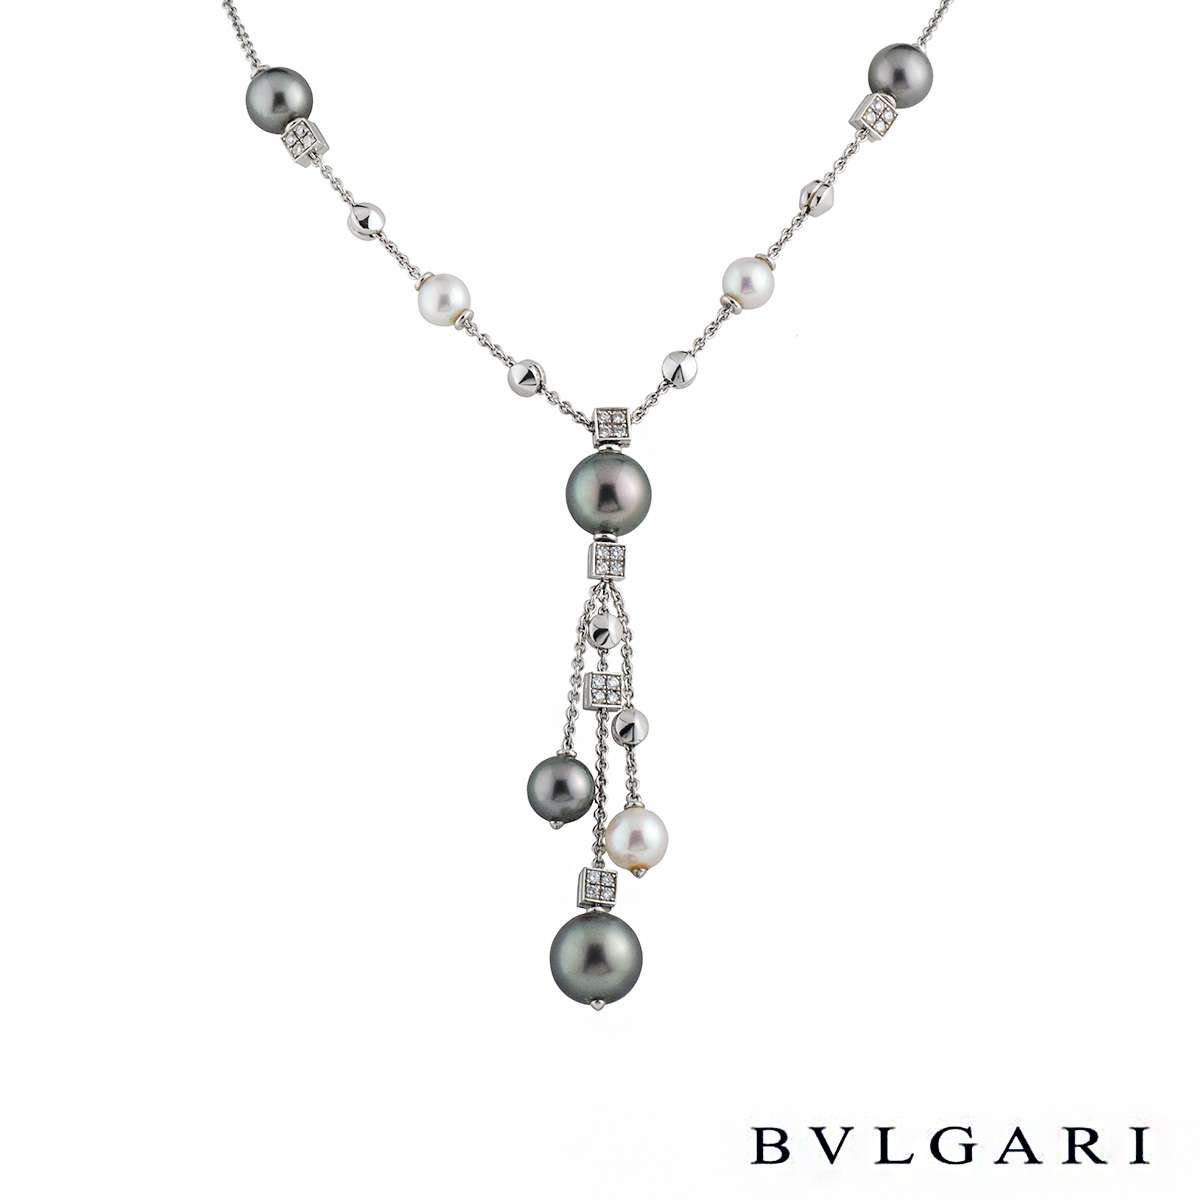 BVLGARI JANNAH Collection. Collier choker et motifs d'oreilles - perles de  culture, nacre, diamants #Bvlgari… | Jewelry photoshoot, Statement necklace,  Necklace set